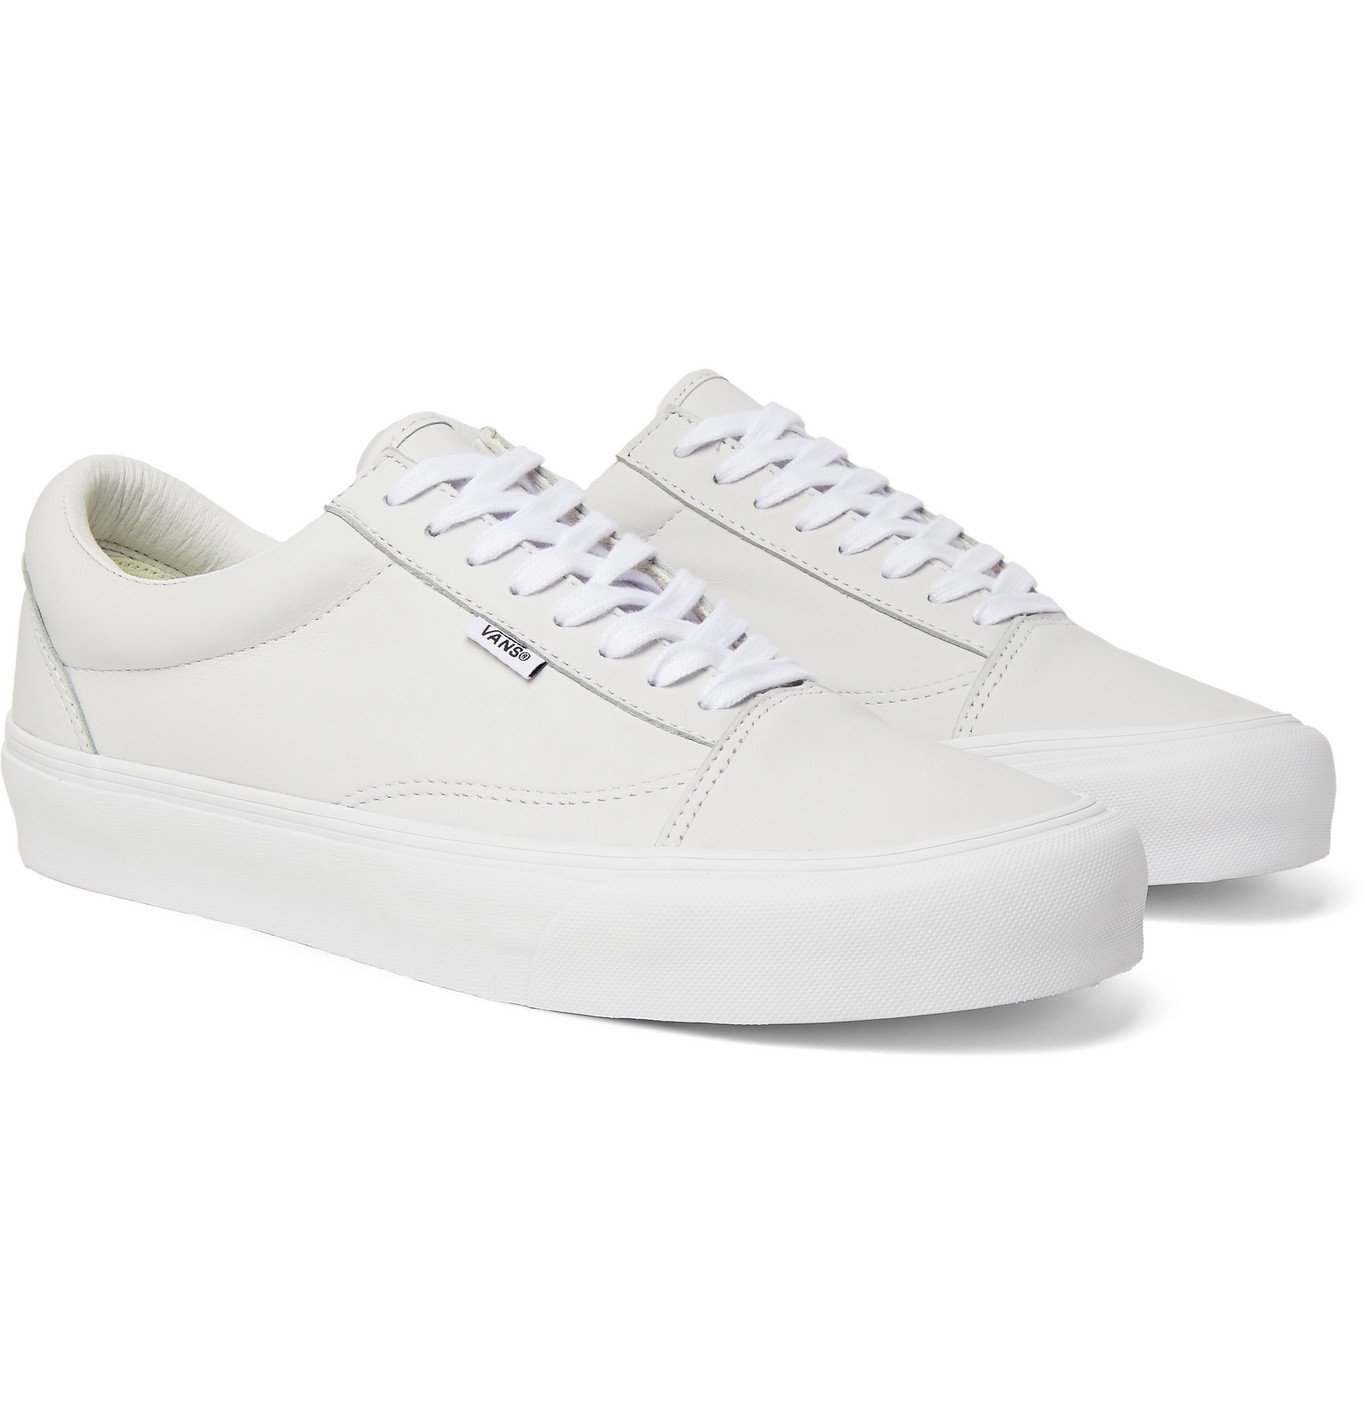 Vans - UA Old Skool Leather Sneakers - White Vans